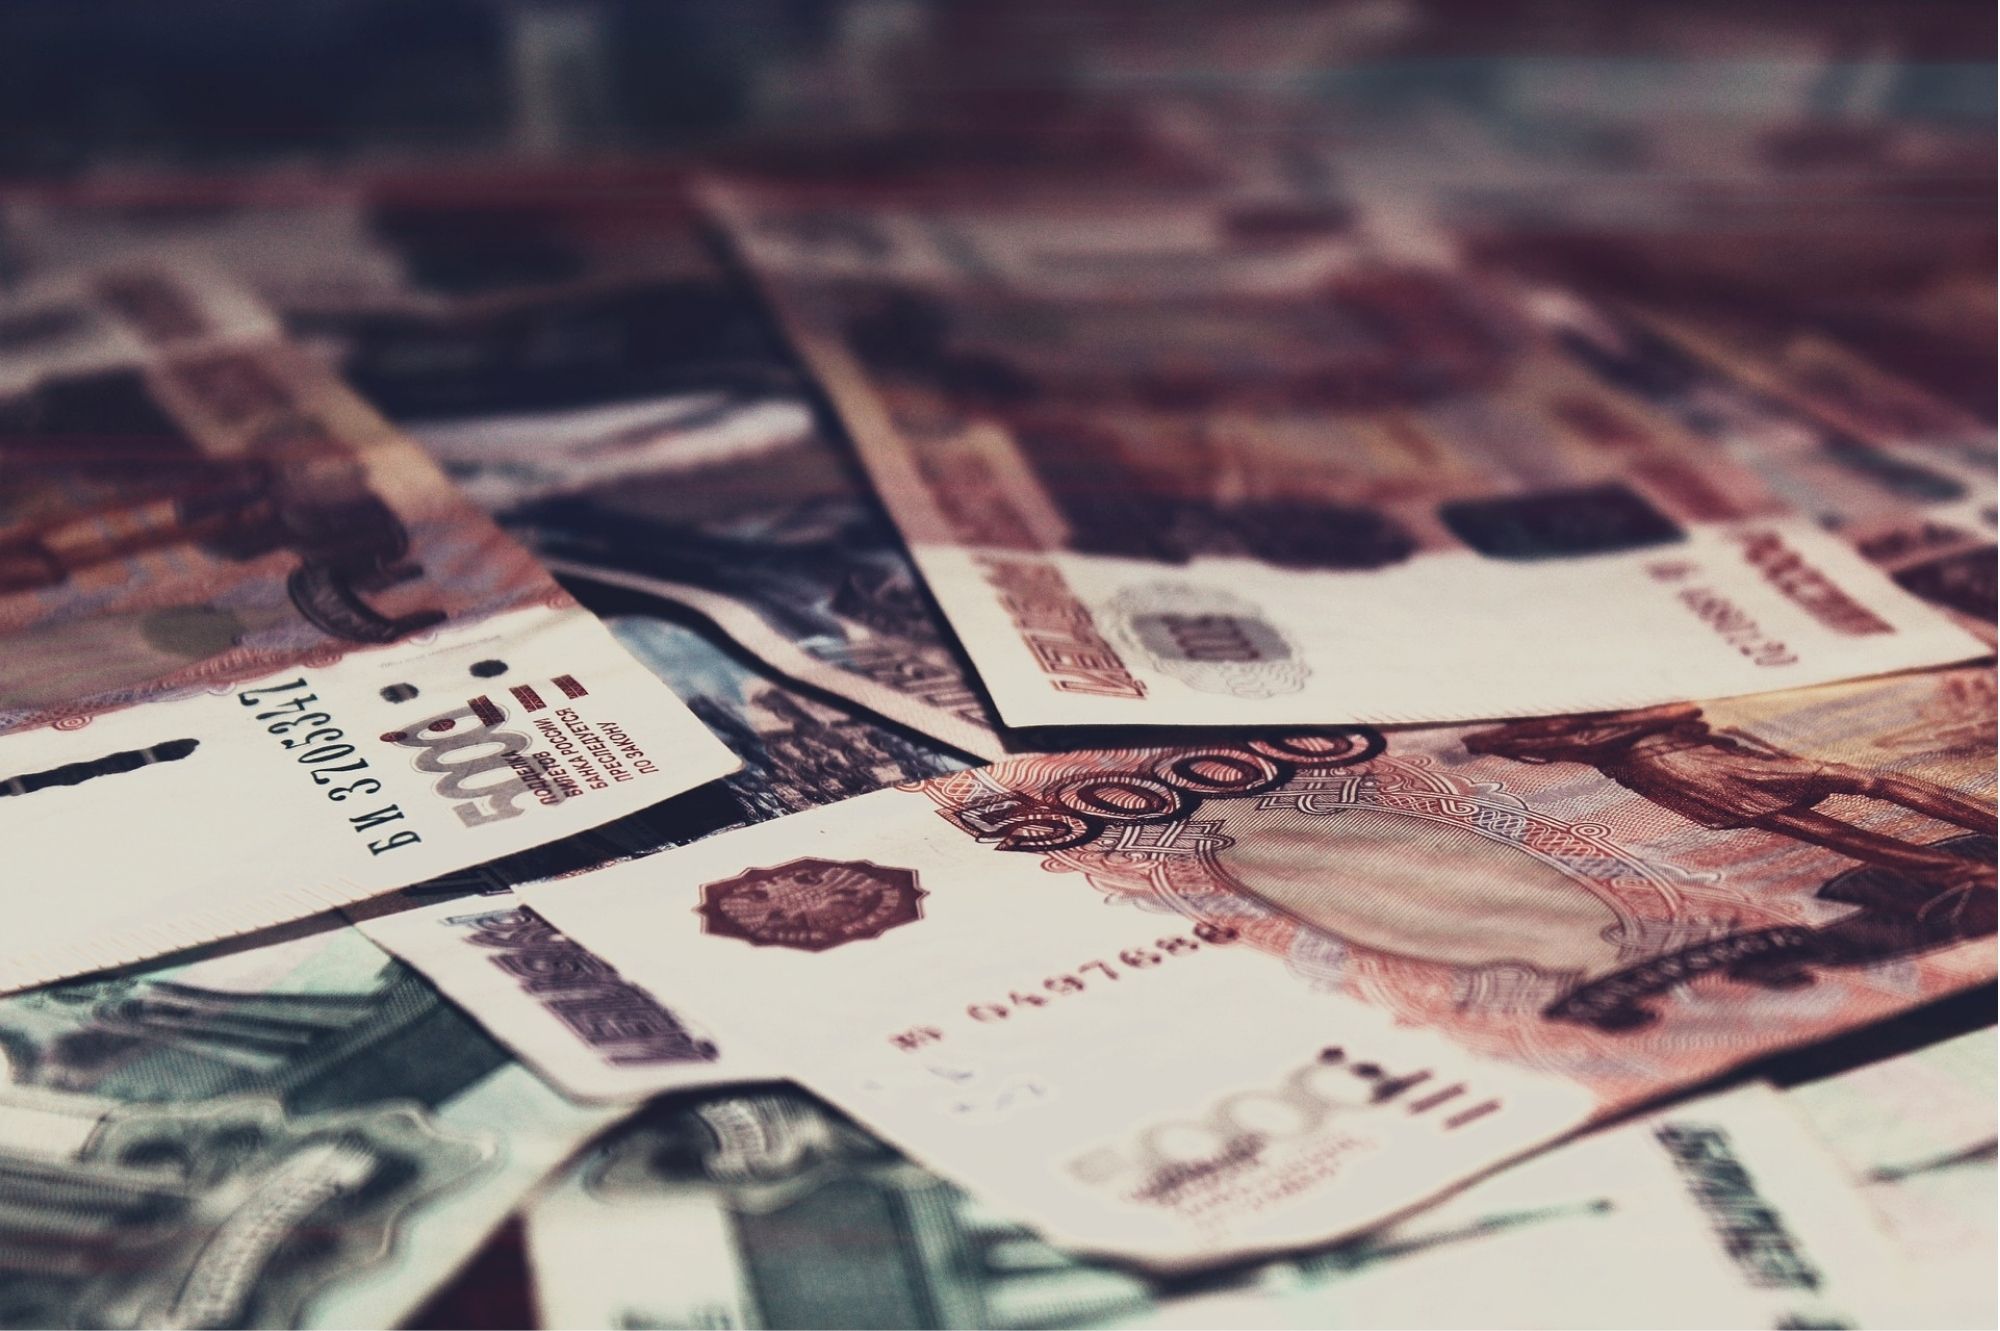 Эстонские банки приостанавливают платежи в Россию и Беларусь. Автор/Источник фото: Pixabay.com.